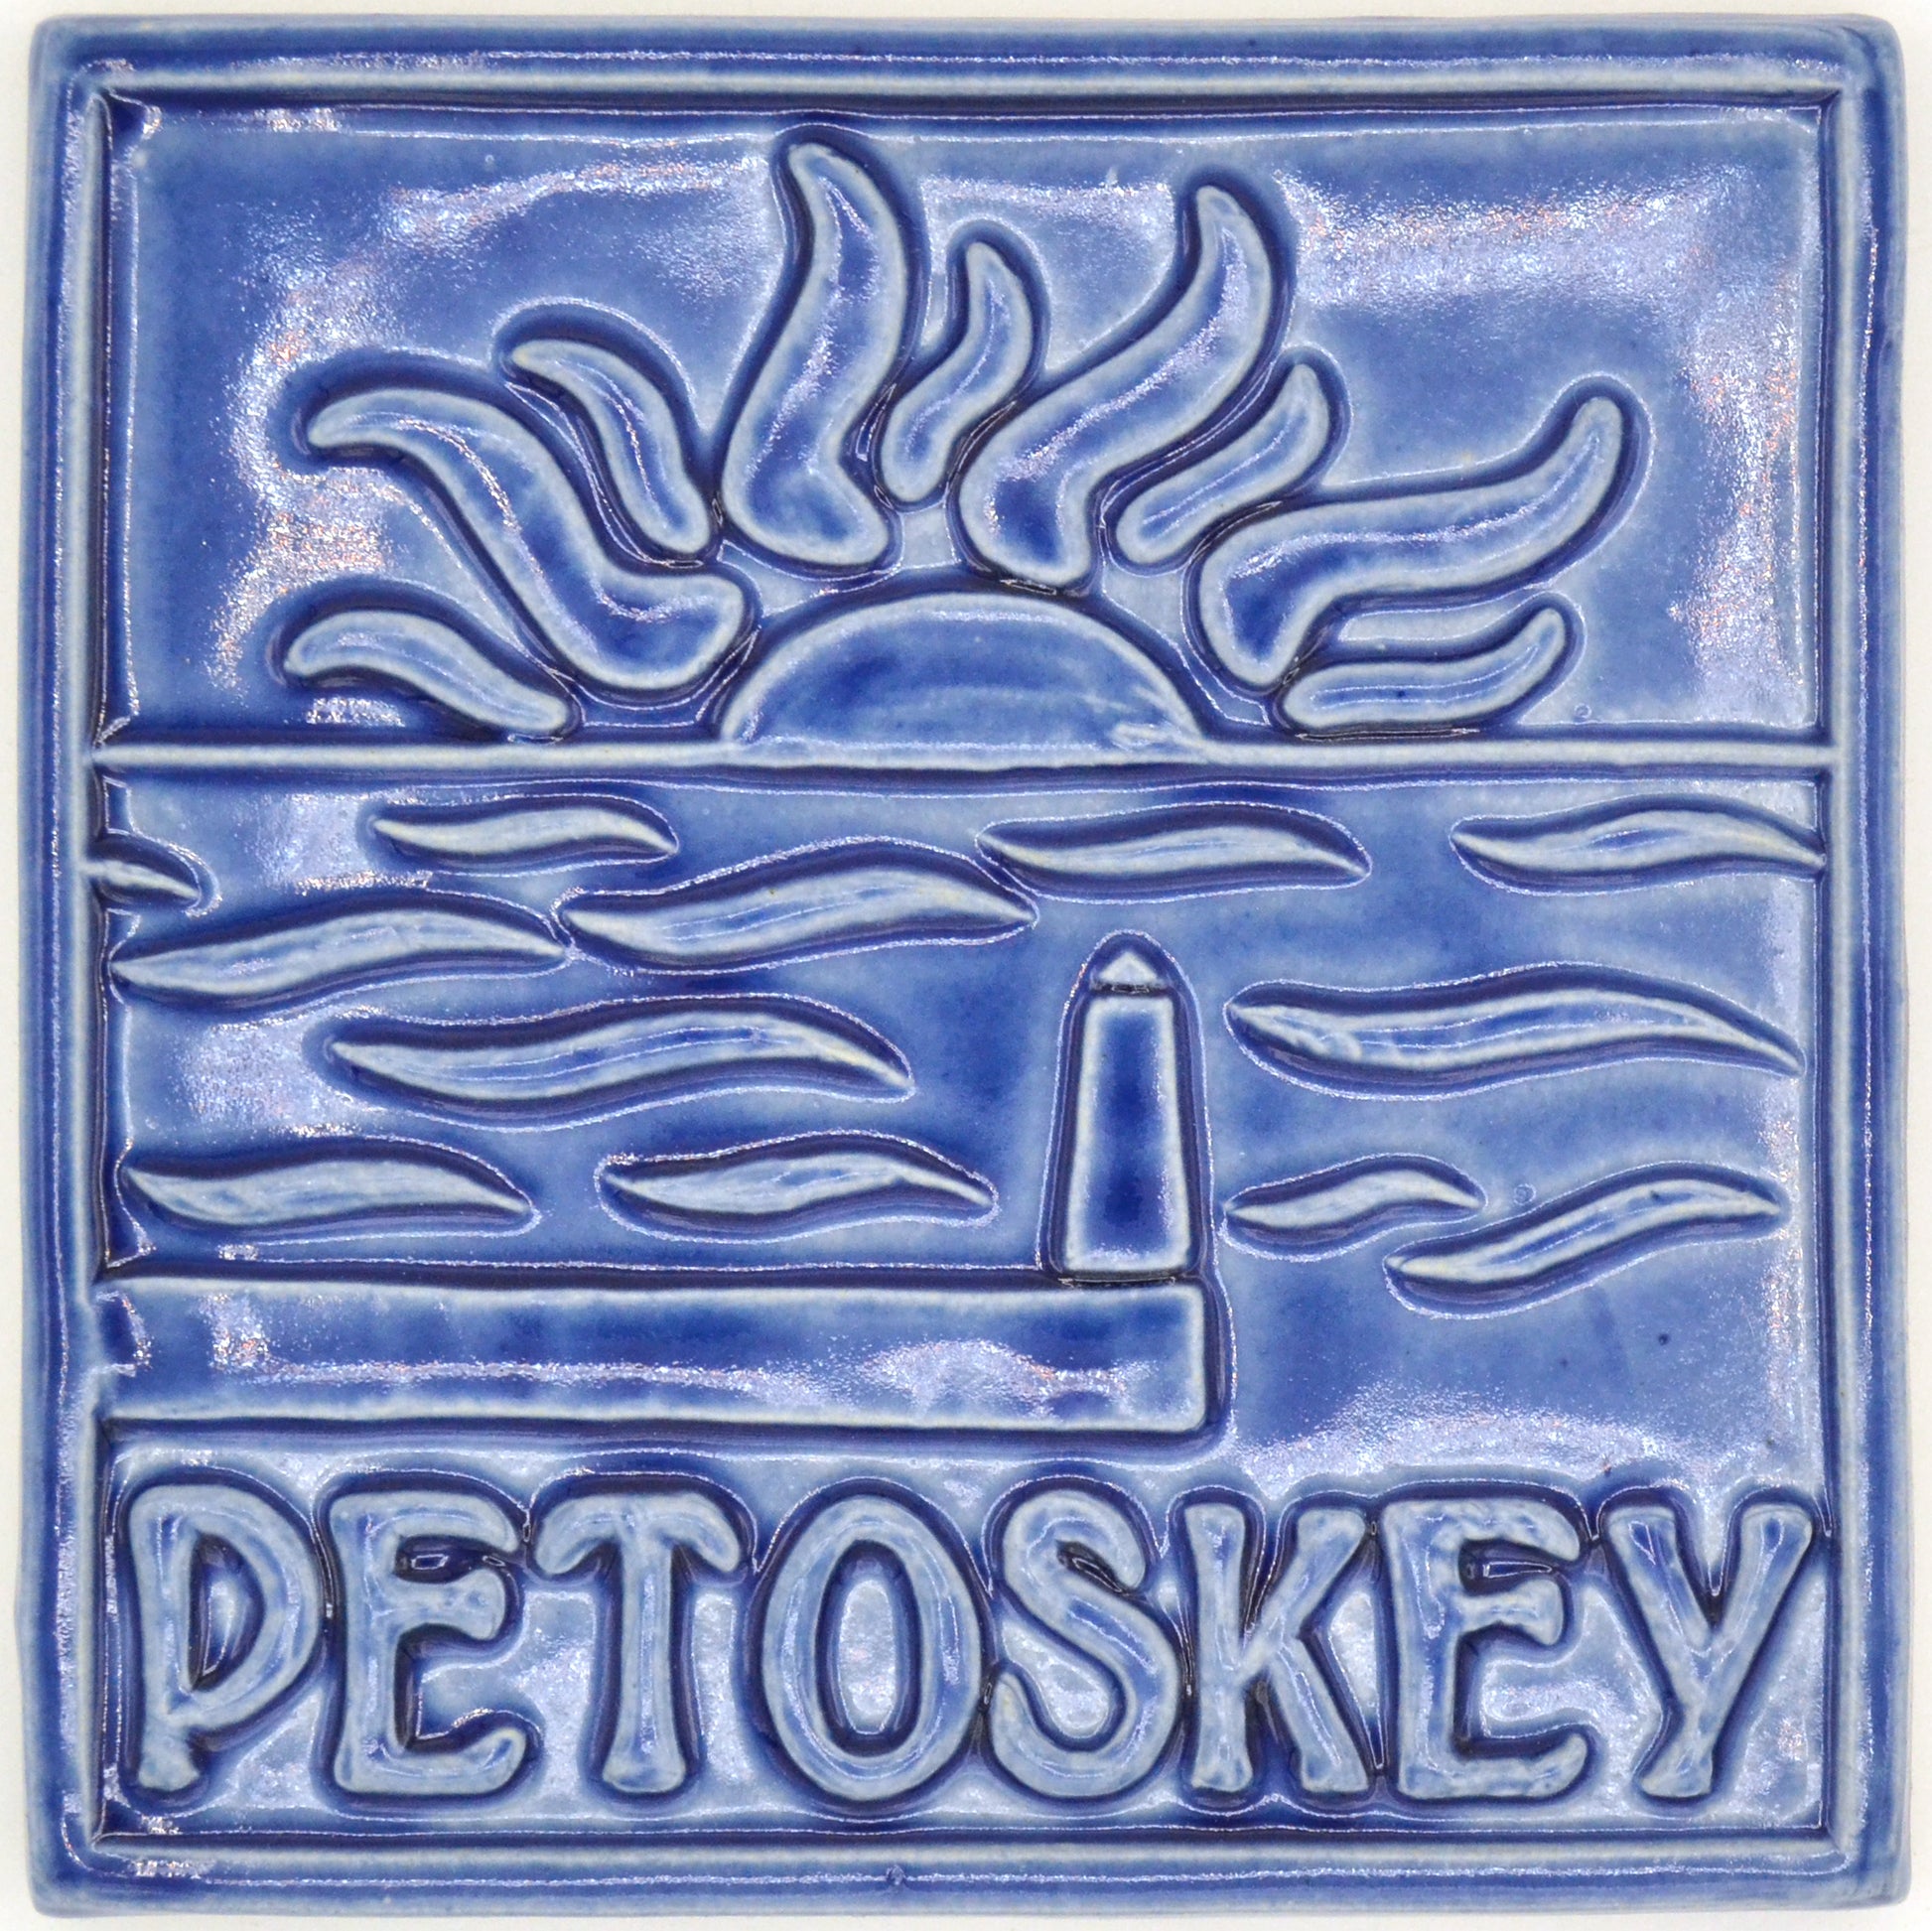 6x6 petoskey tile blue